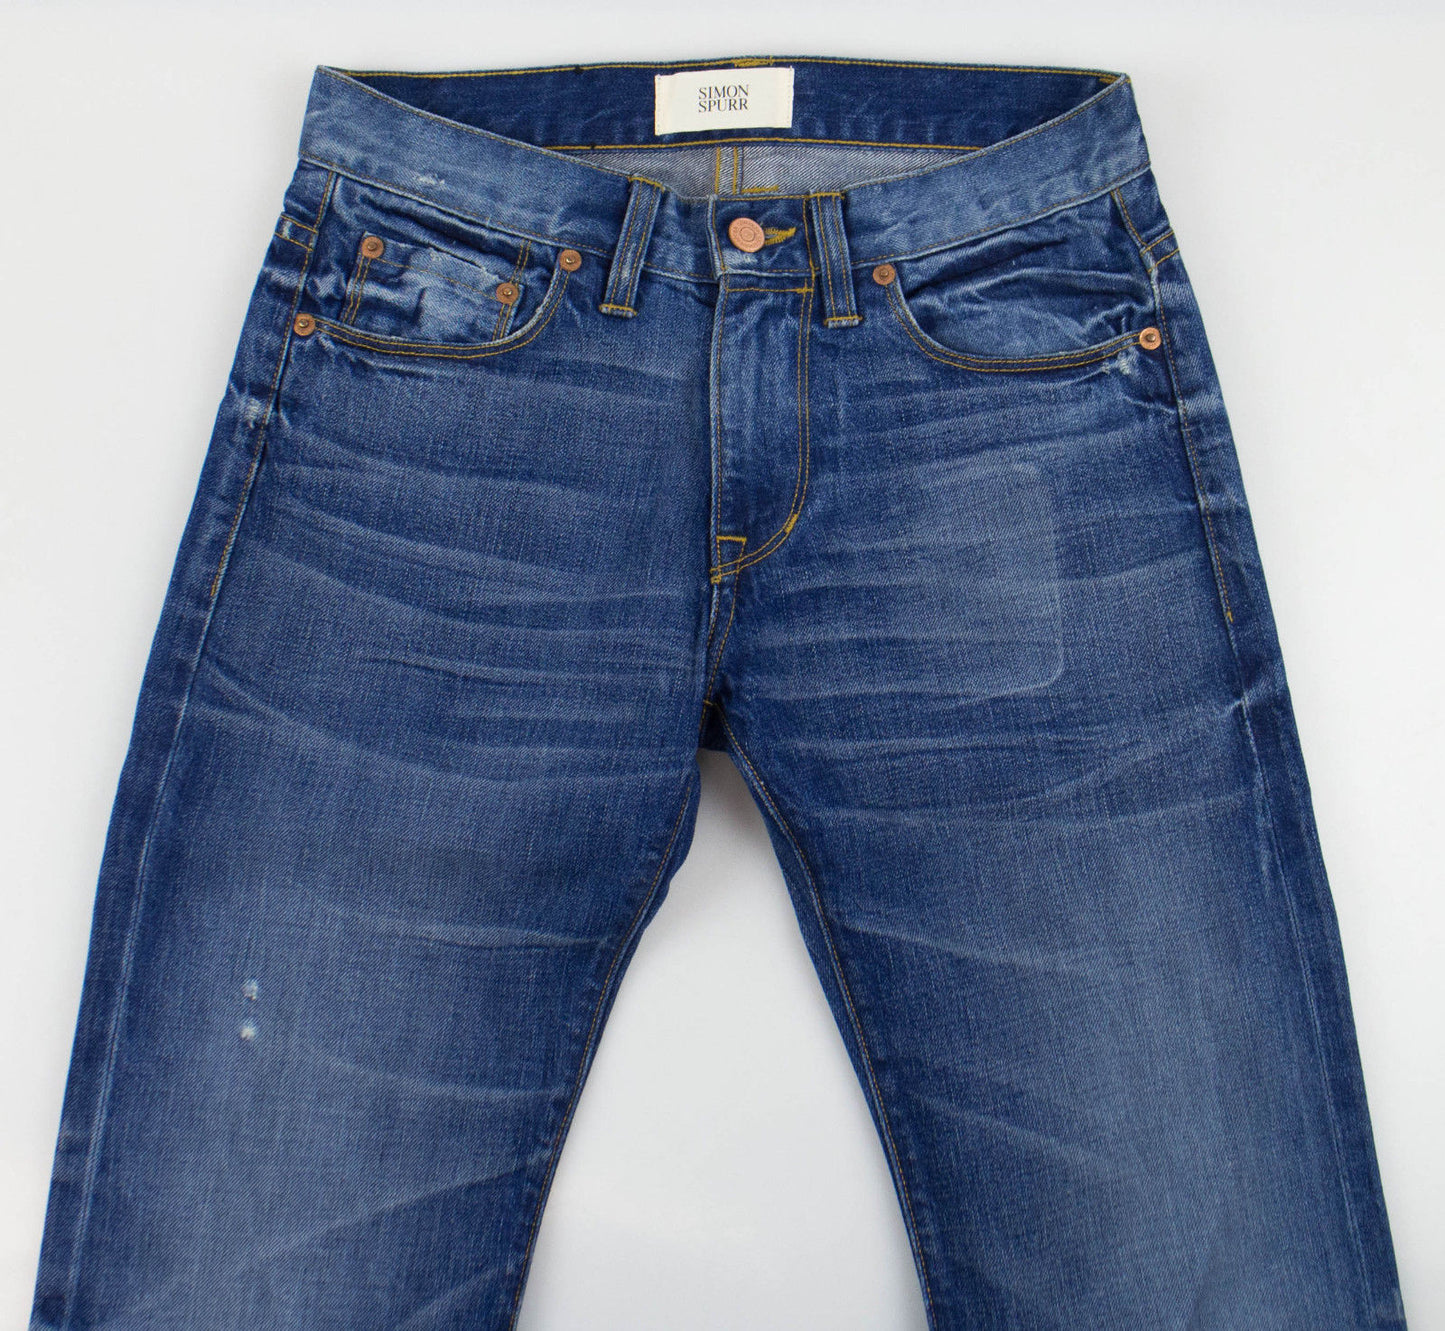 Simon Spurr Men'S Cotton Denim Jeans Pants - Blue